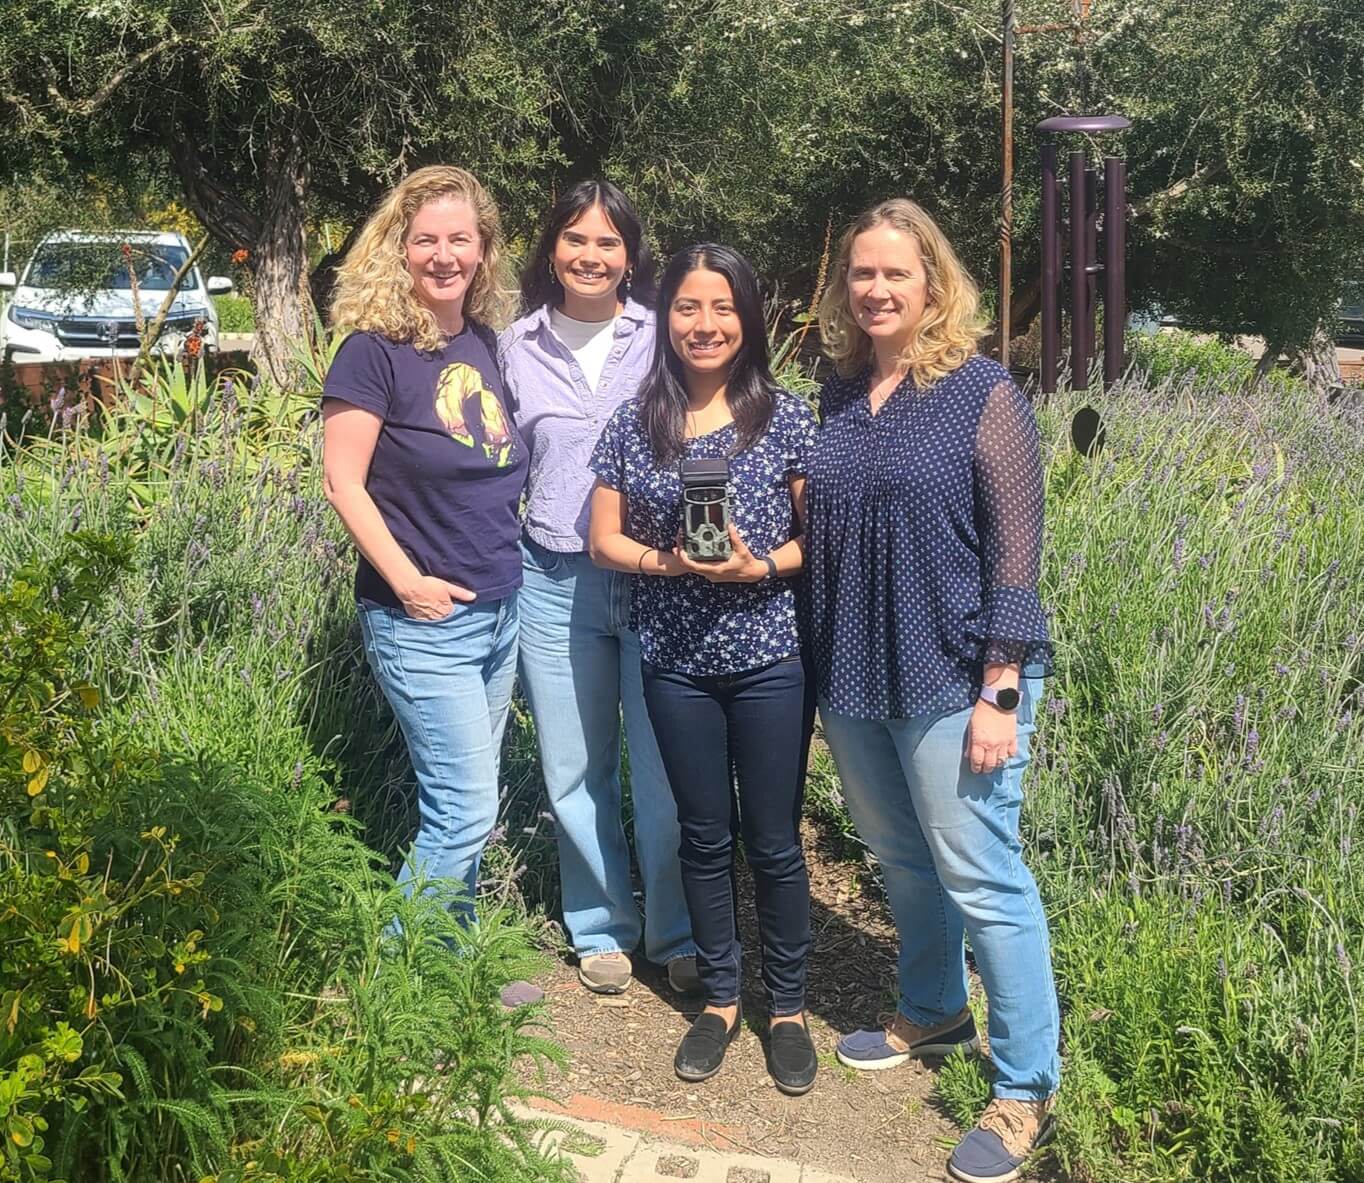 Our WILDLABS award team (from left to right): Christina Simokat, Mia Lorence, Yuli Martinez, & Liz Ferguson